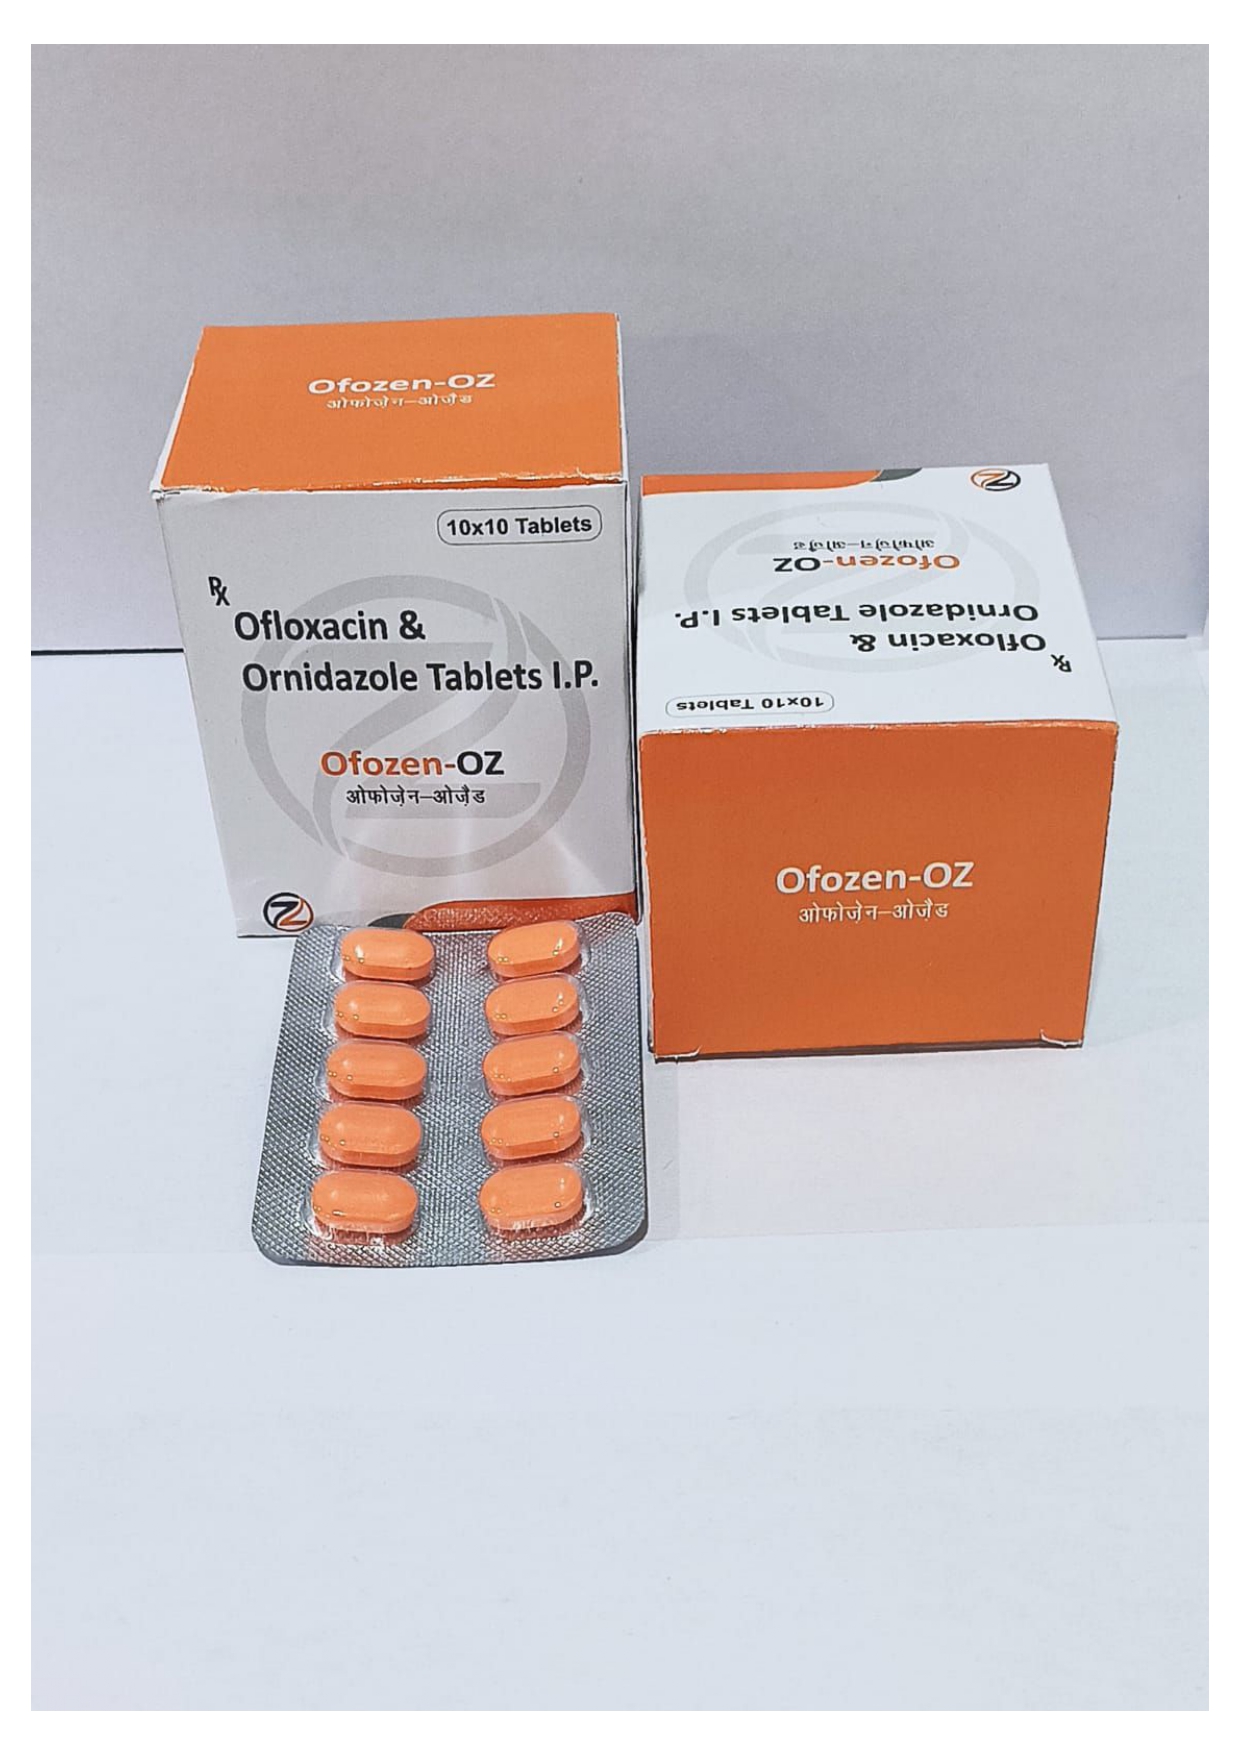 ofloxacin 200mg + ornidazole 500mg